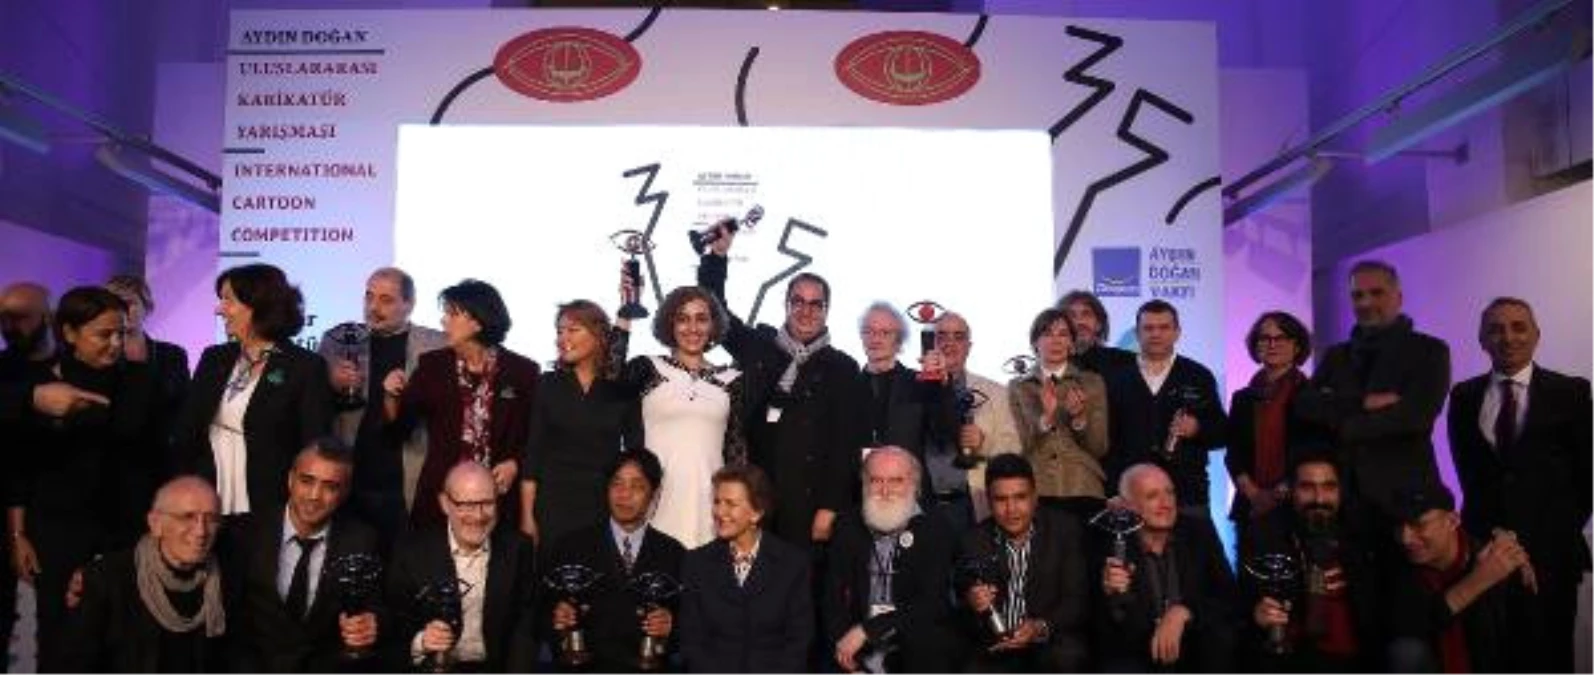 35. Aydın Doğan Uluslararası Karikatür Yarışması Ödülleri Sahiplerini Buldu